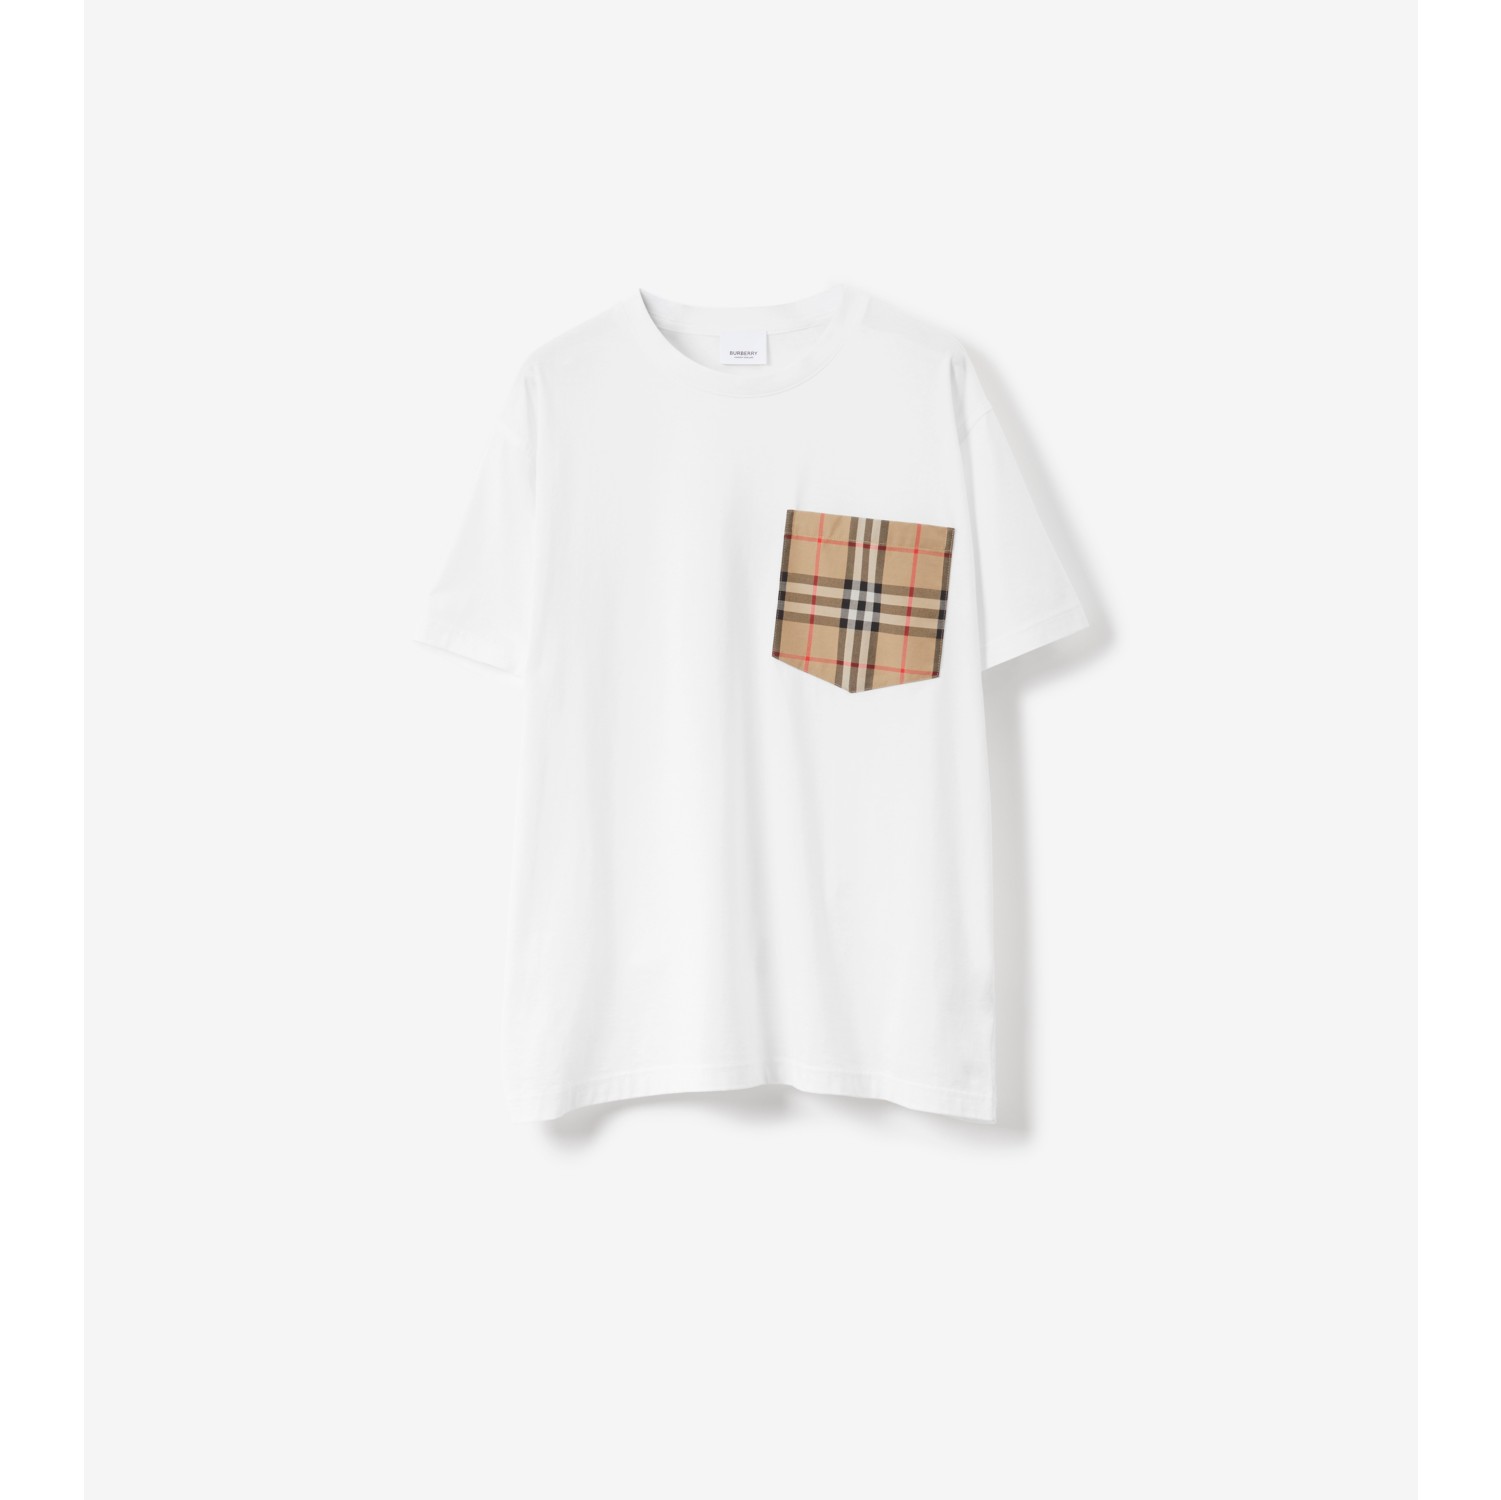 Baumwoll-T-Shirt mit Check-Tasche